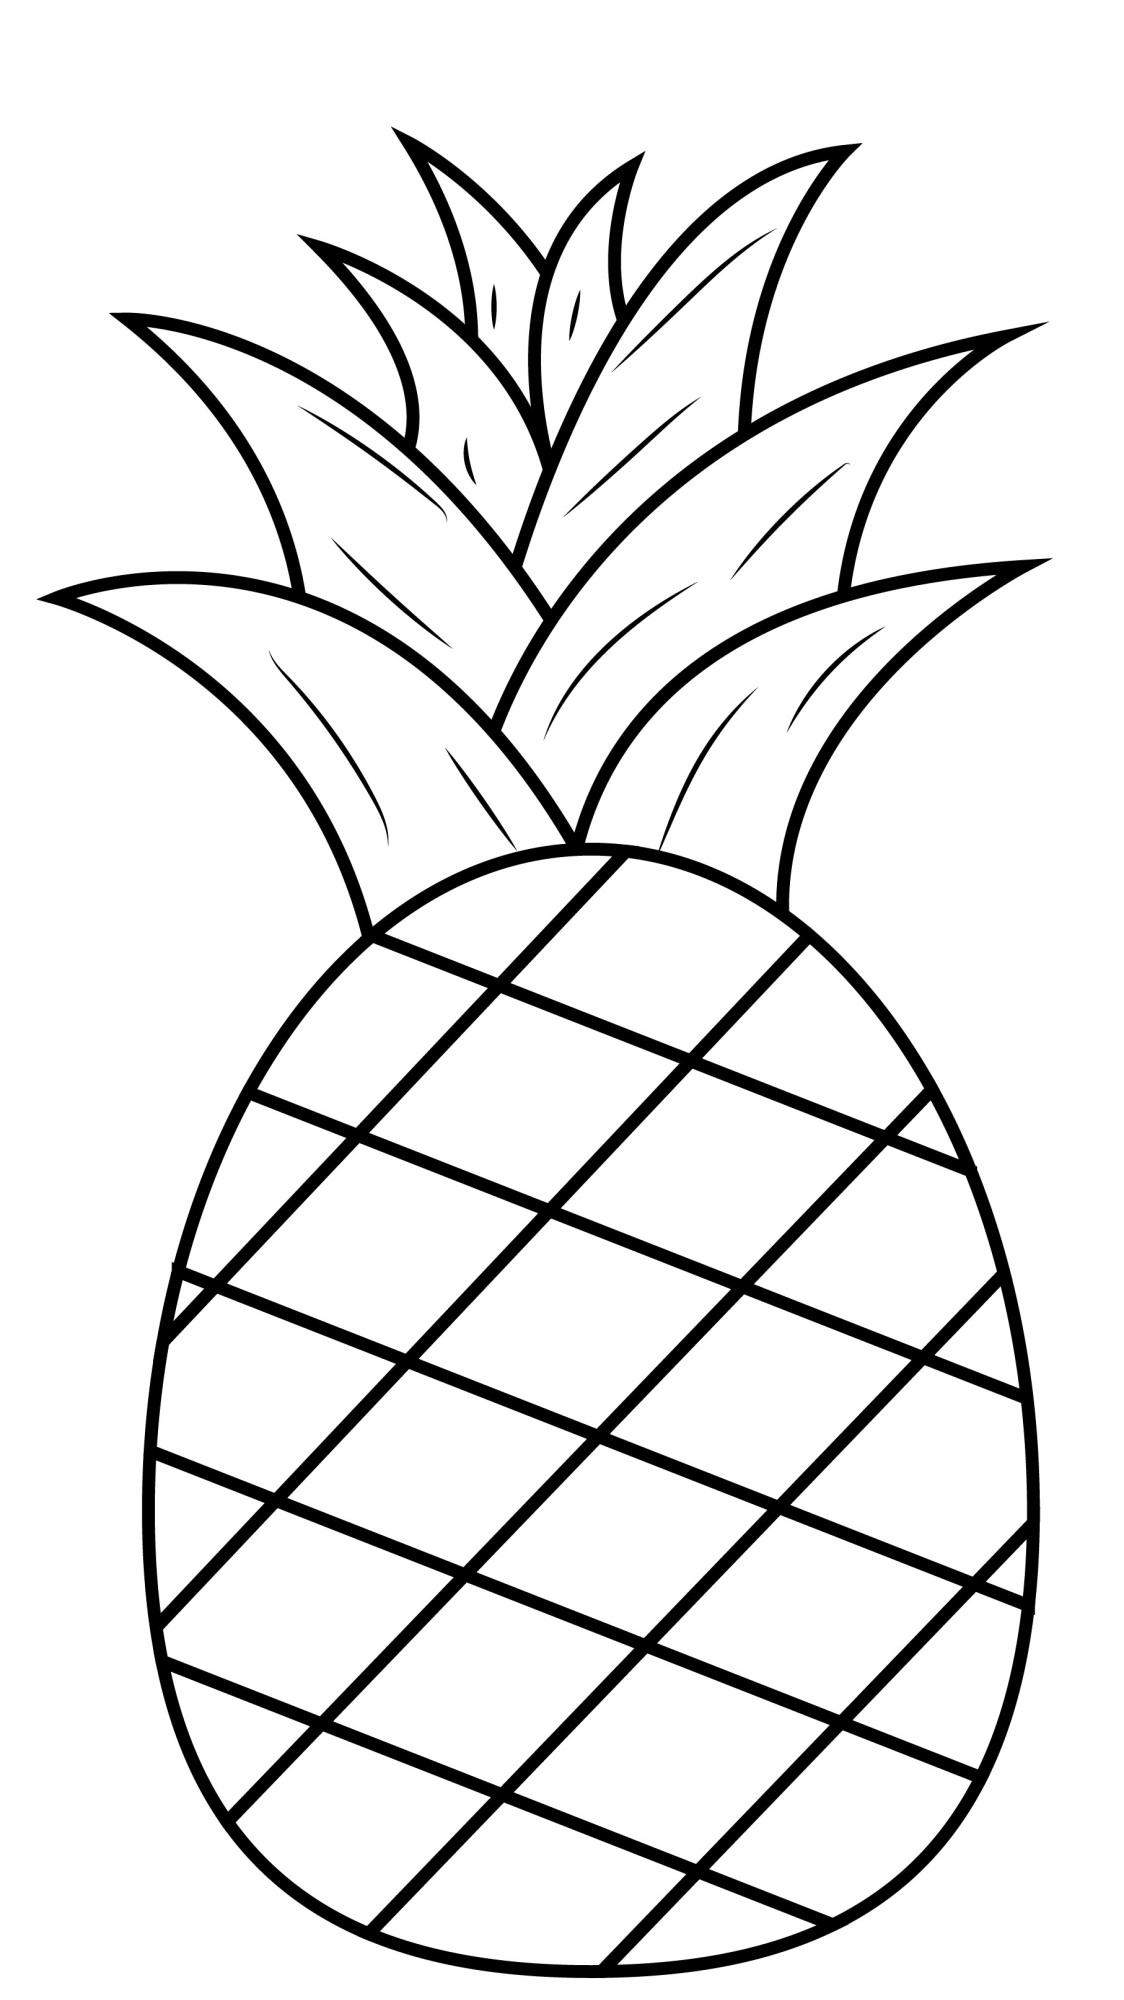 Раскраска для детей: сочный ананас тропический фрукт